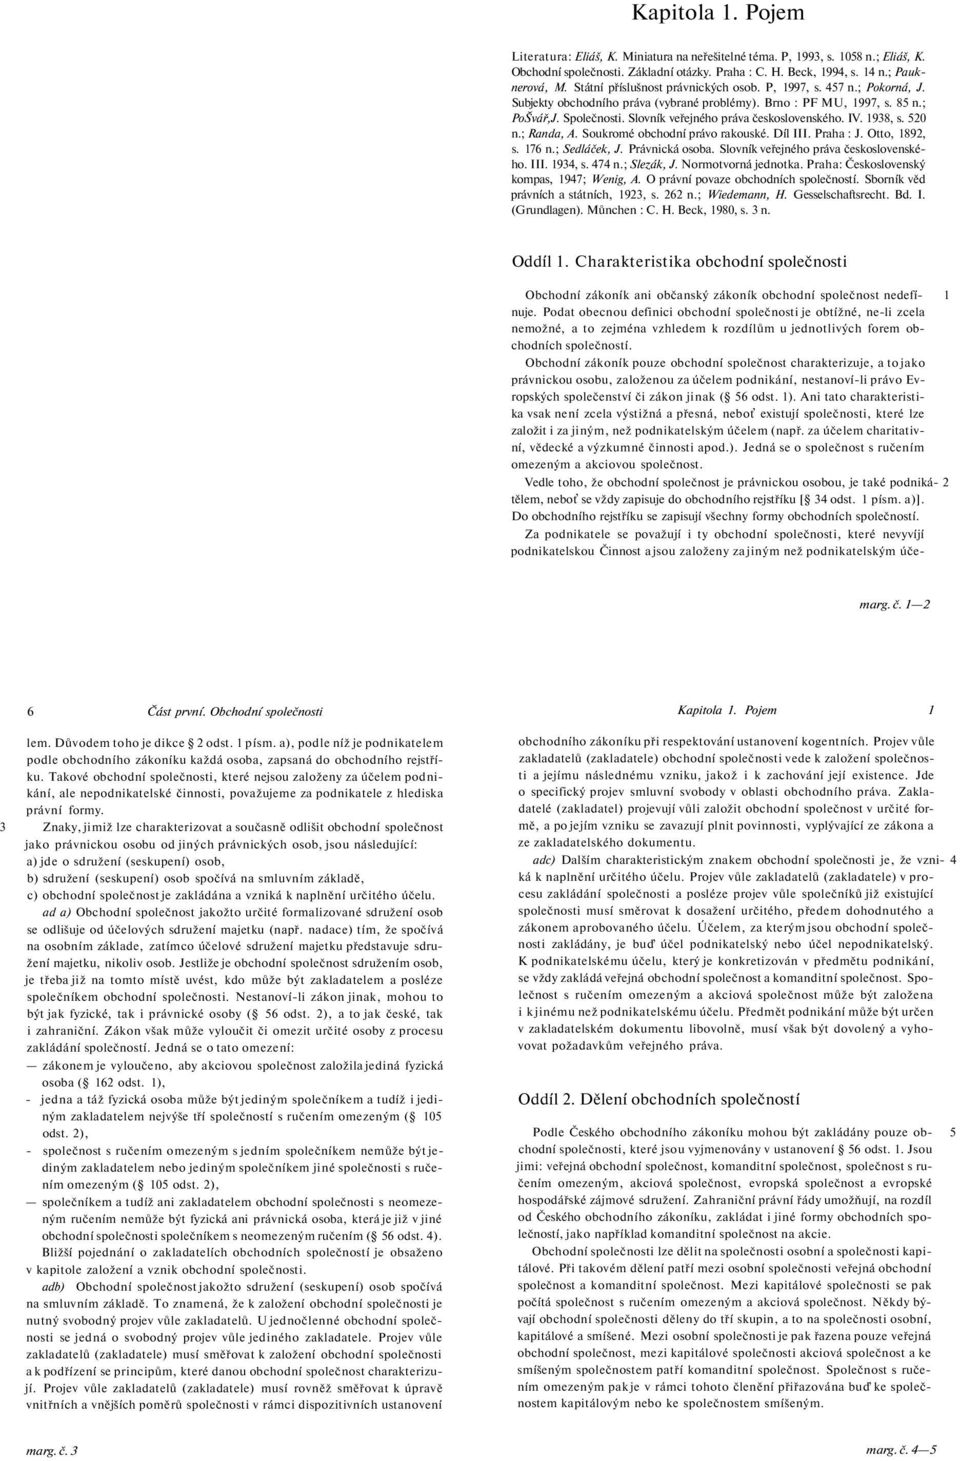 Kurs obchodního práva - PDF Stažení zdarma